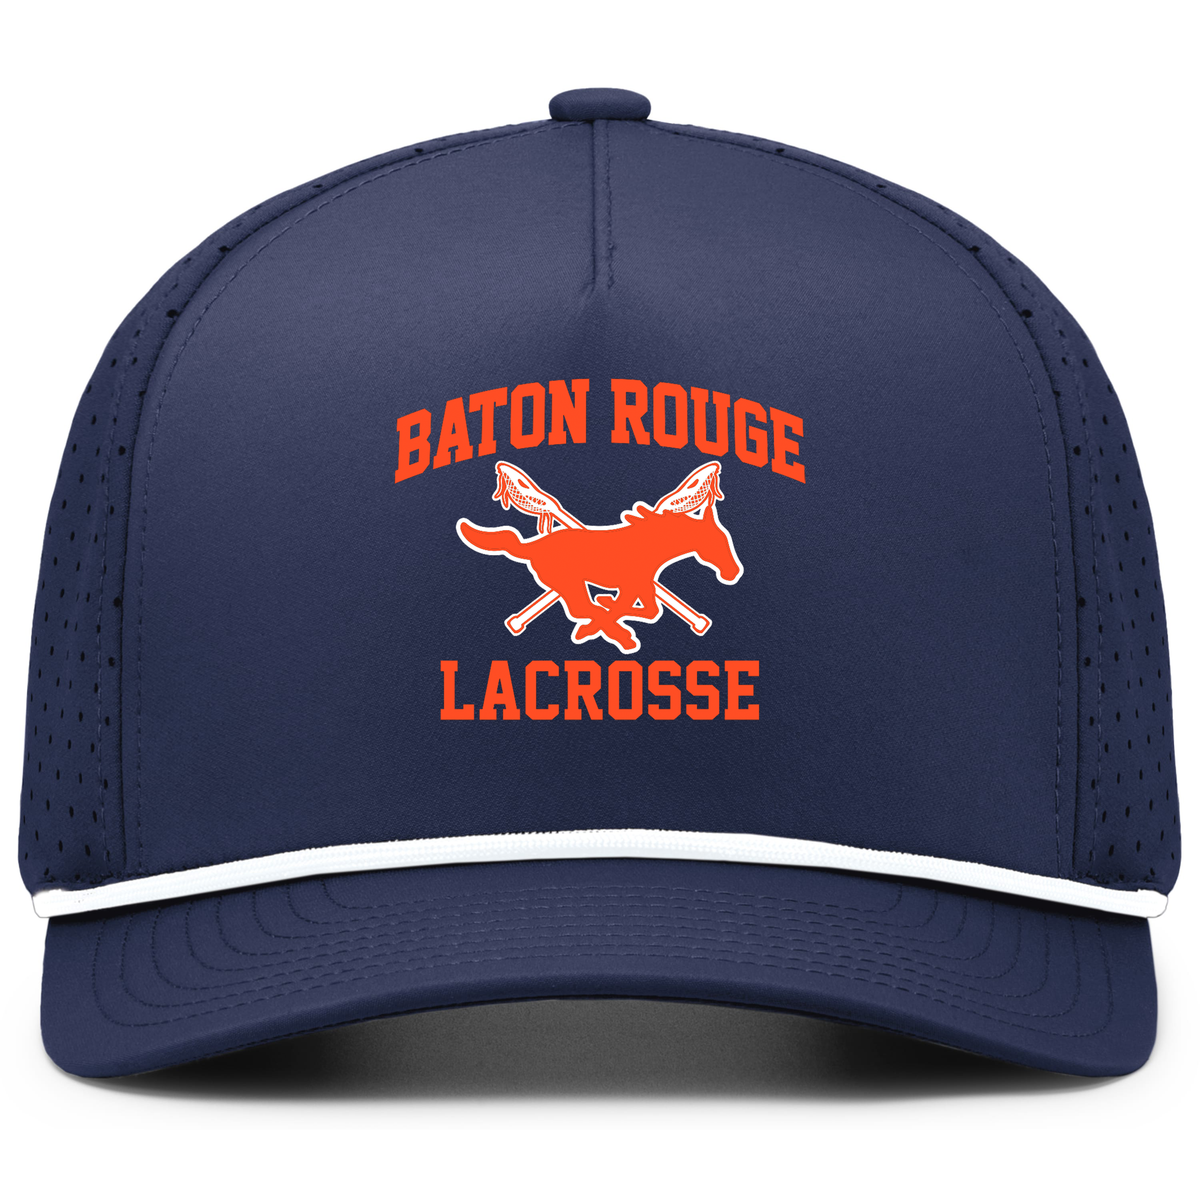 Baton Rouge Mustangs Lacrosse Weekend Perforated Snapback Cap